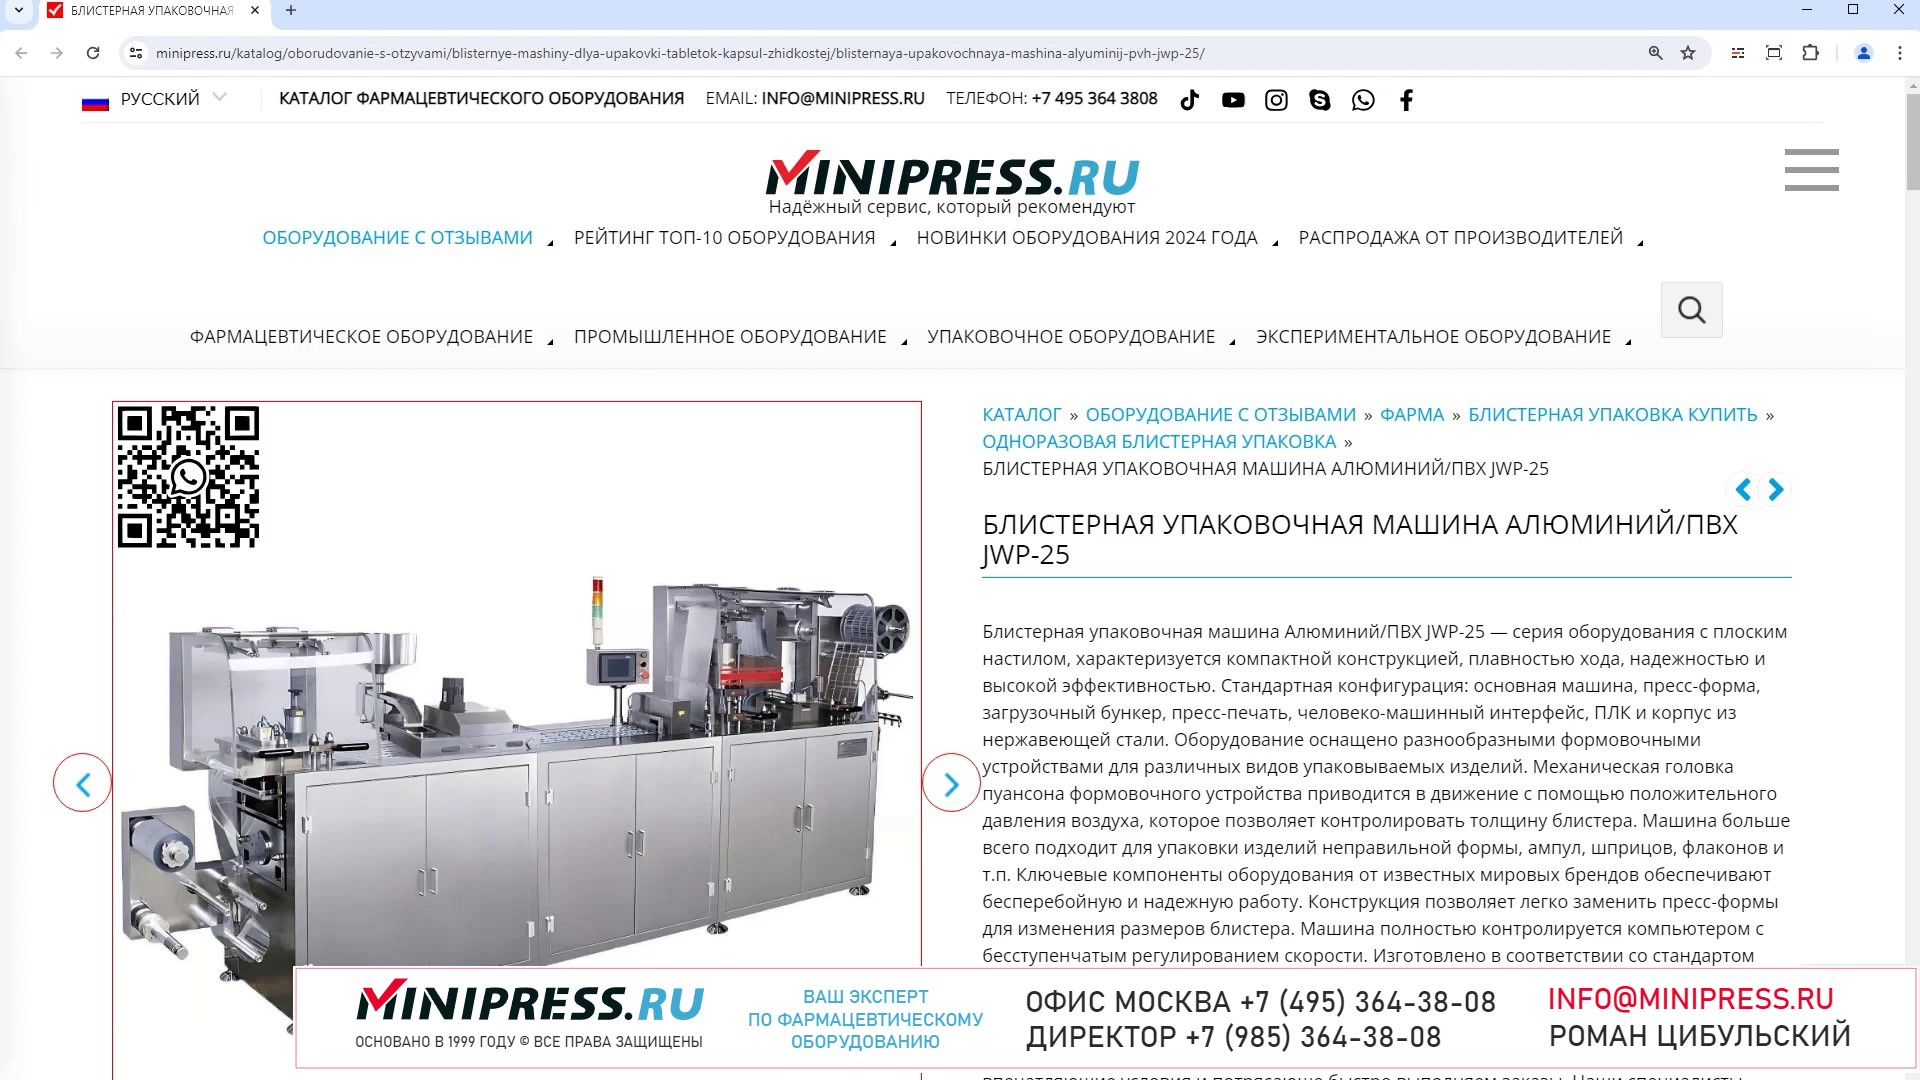 Minipress.ru Блистерная упаковочная машина АлюминийПВХ JWP-25